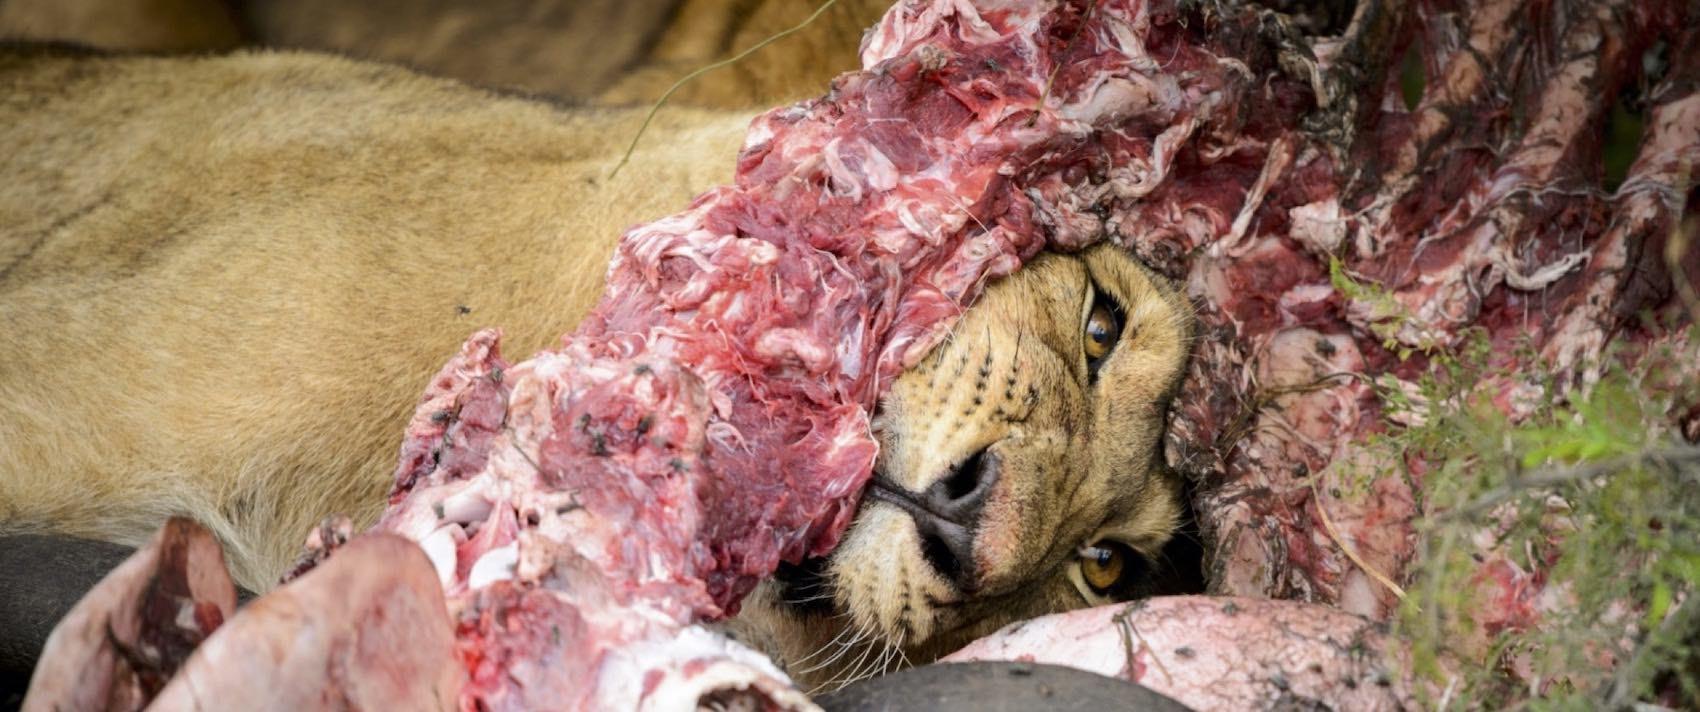 Lion qui mange une carcasse de buffle